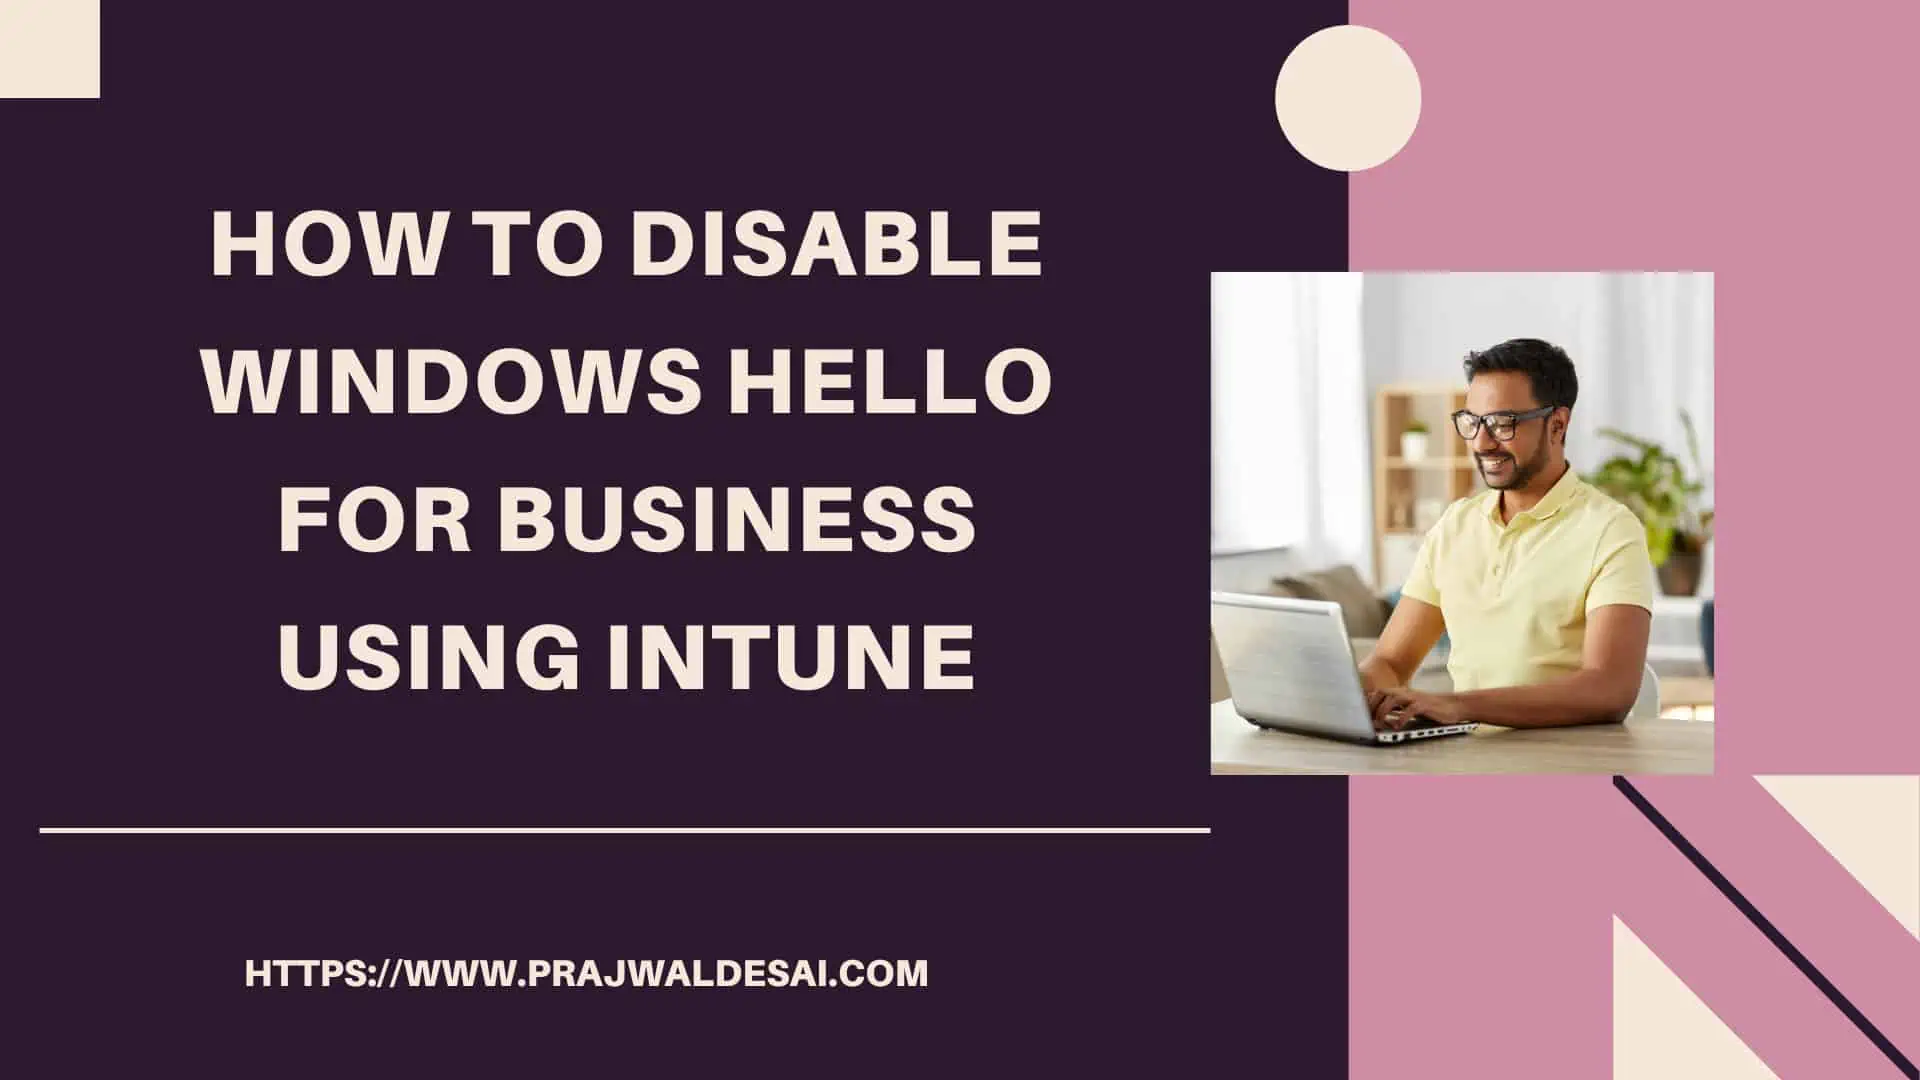 使用Intune ftimg禁用Windows Hello for Business